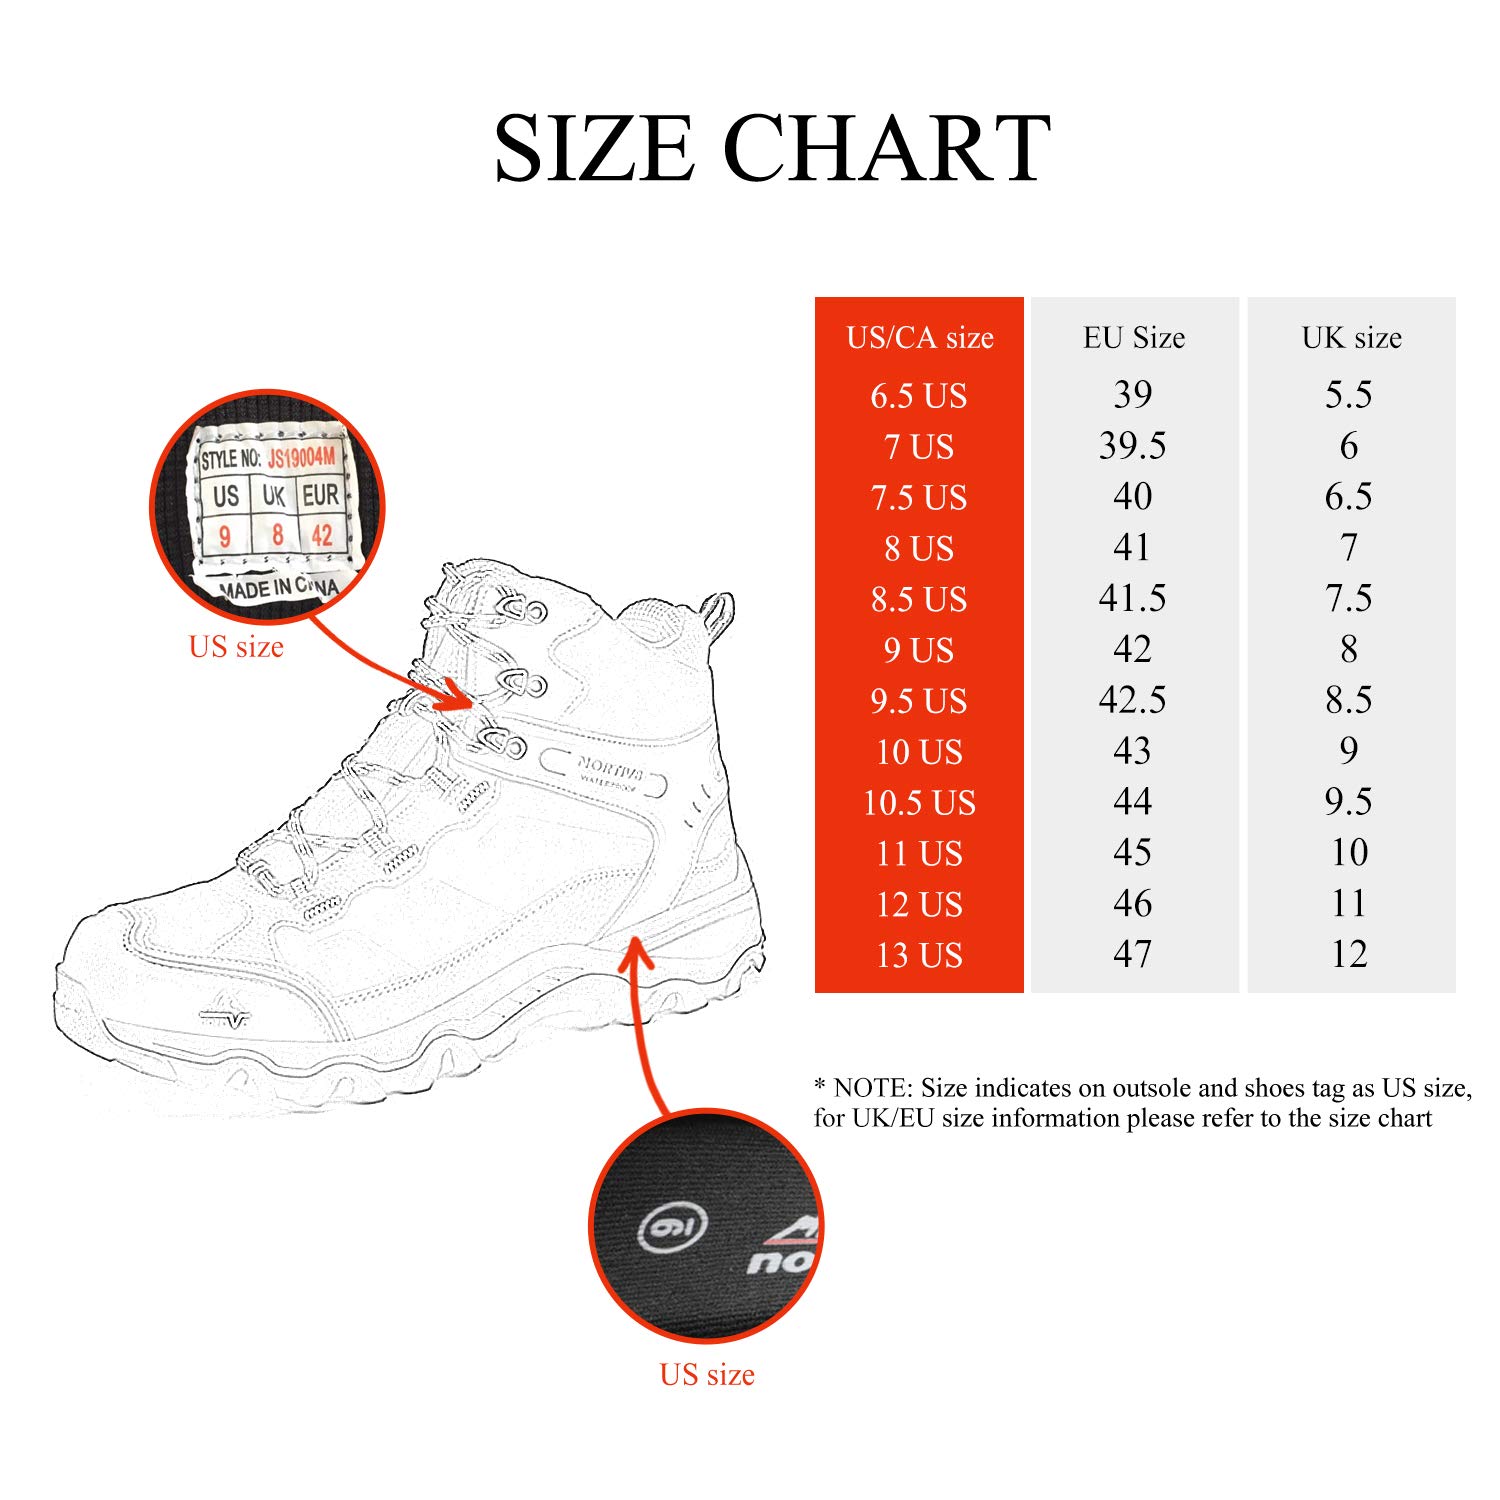 Nếu bạn là một người đi bộ đường dài, hãy dành chút thời gian để xem qua bộ sưu tập giày leo núi để chọn cho mình một đôi giày phù hợp. Với những thiết kế mới nhất và công nghệ tiên tiến, bạn sẽ tránh được những chấn thương không đáng có.